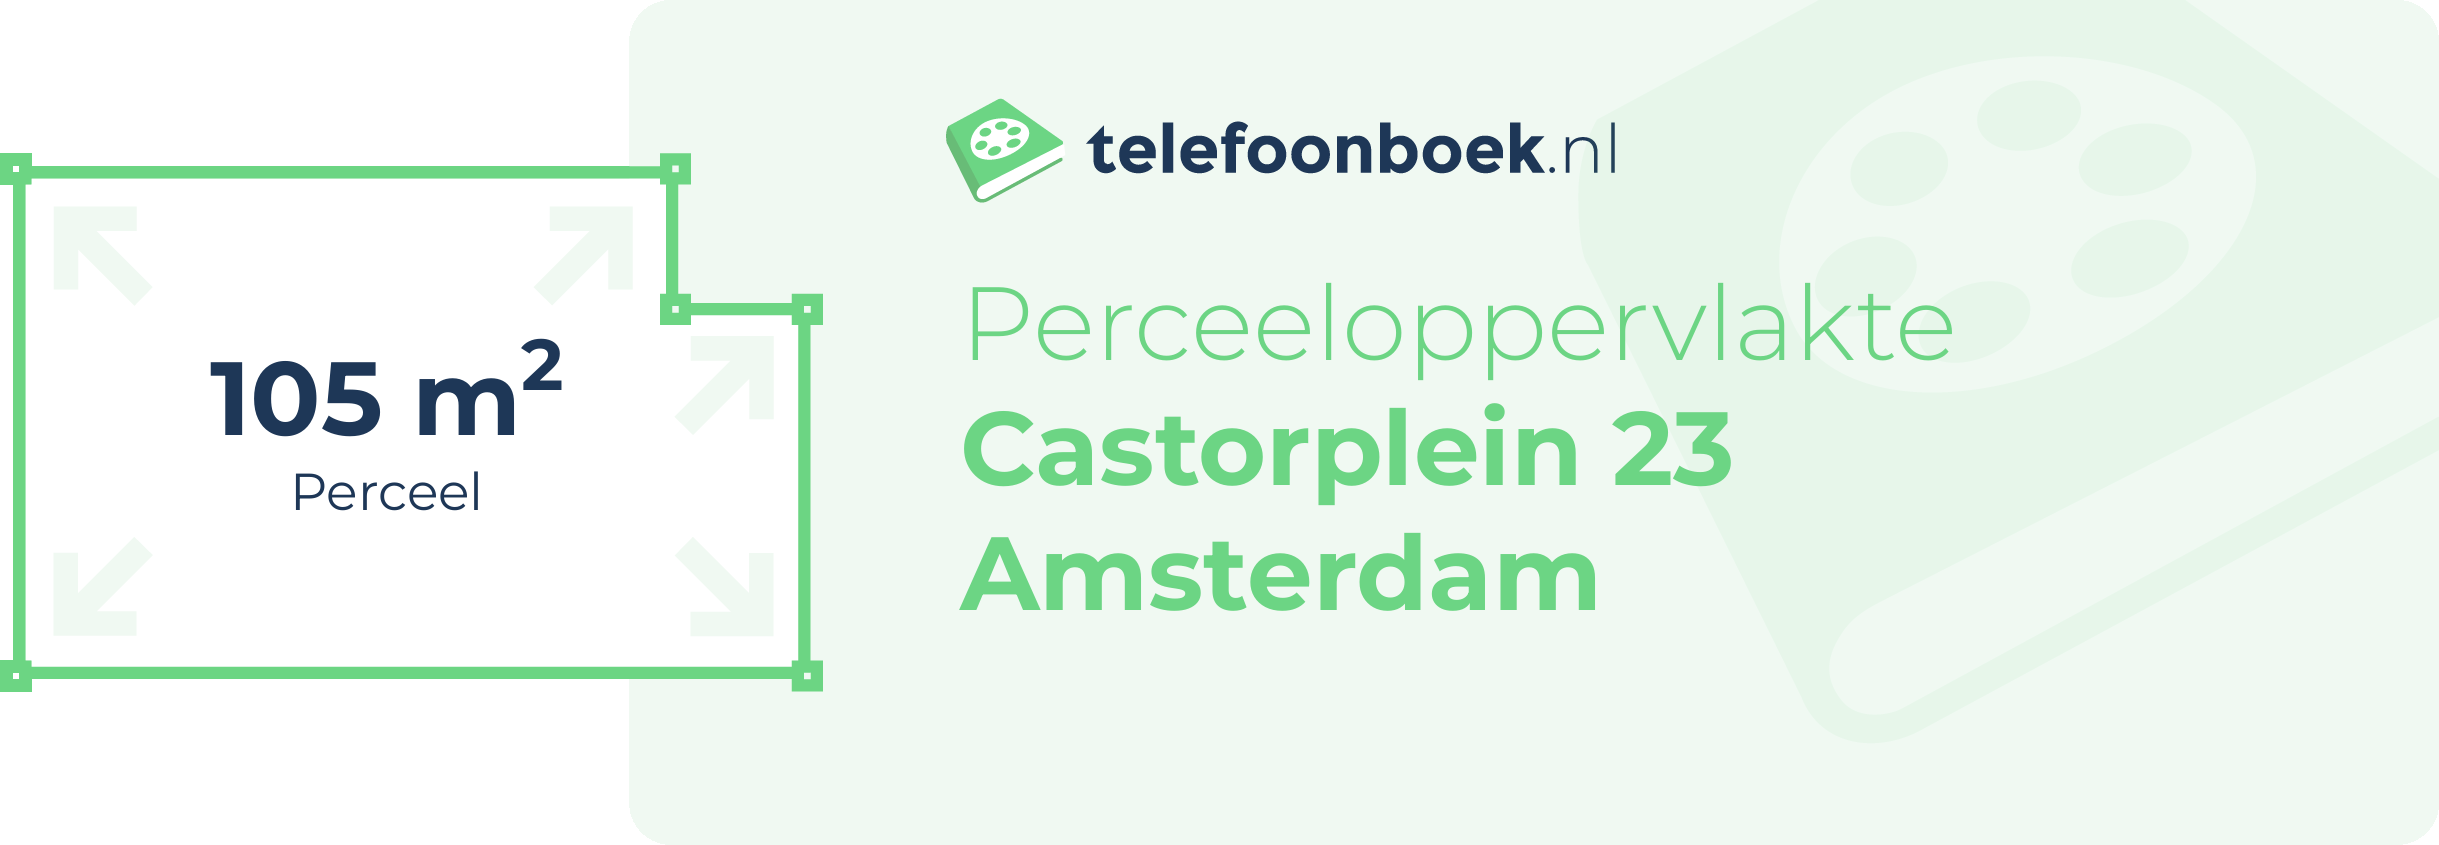 Perceeloppervlakte Castorplein 23 Amsterdam